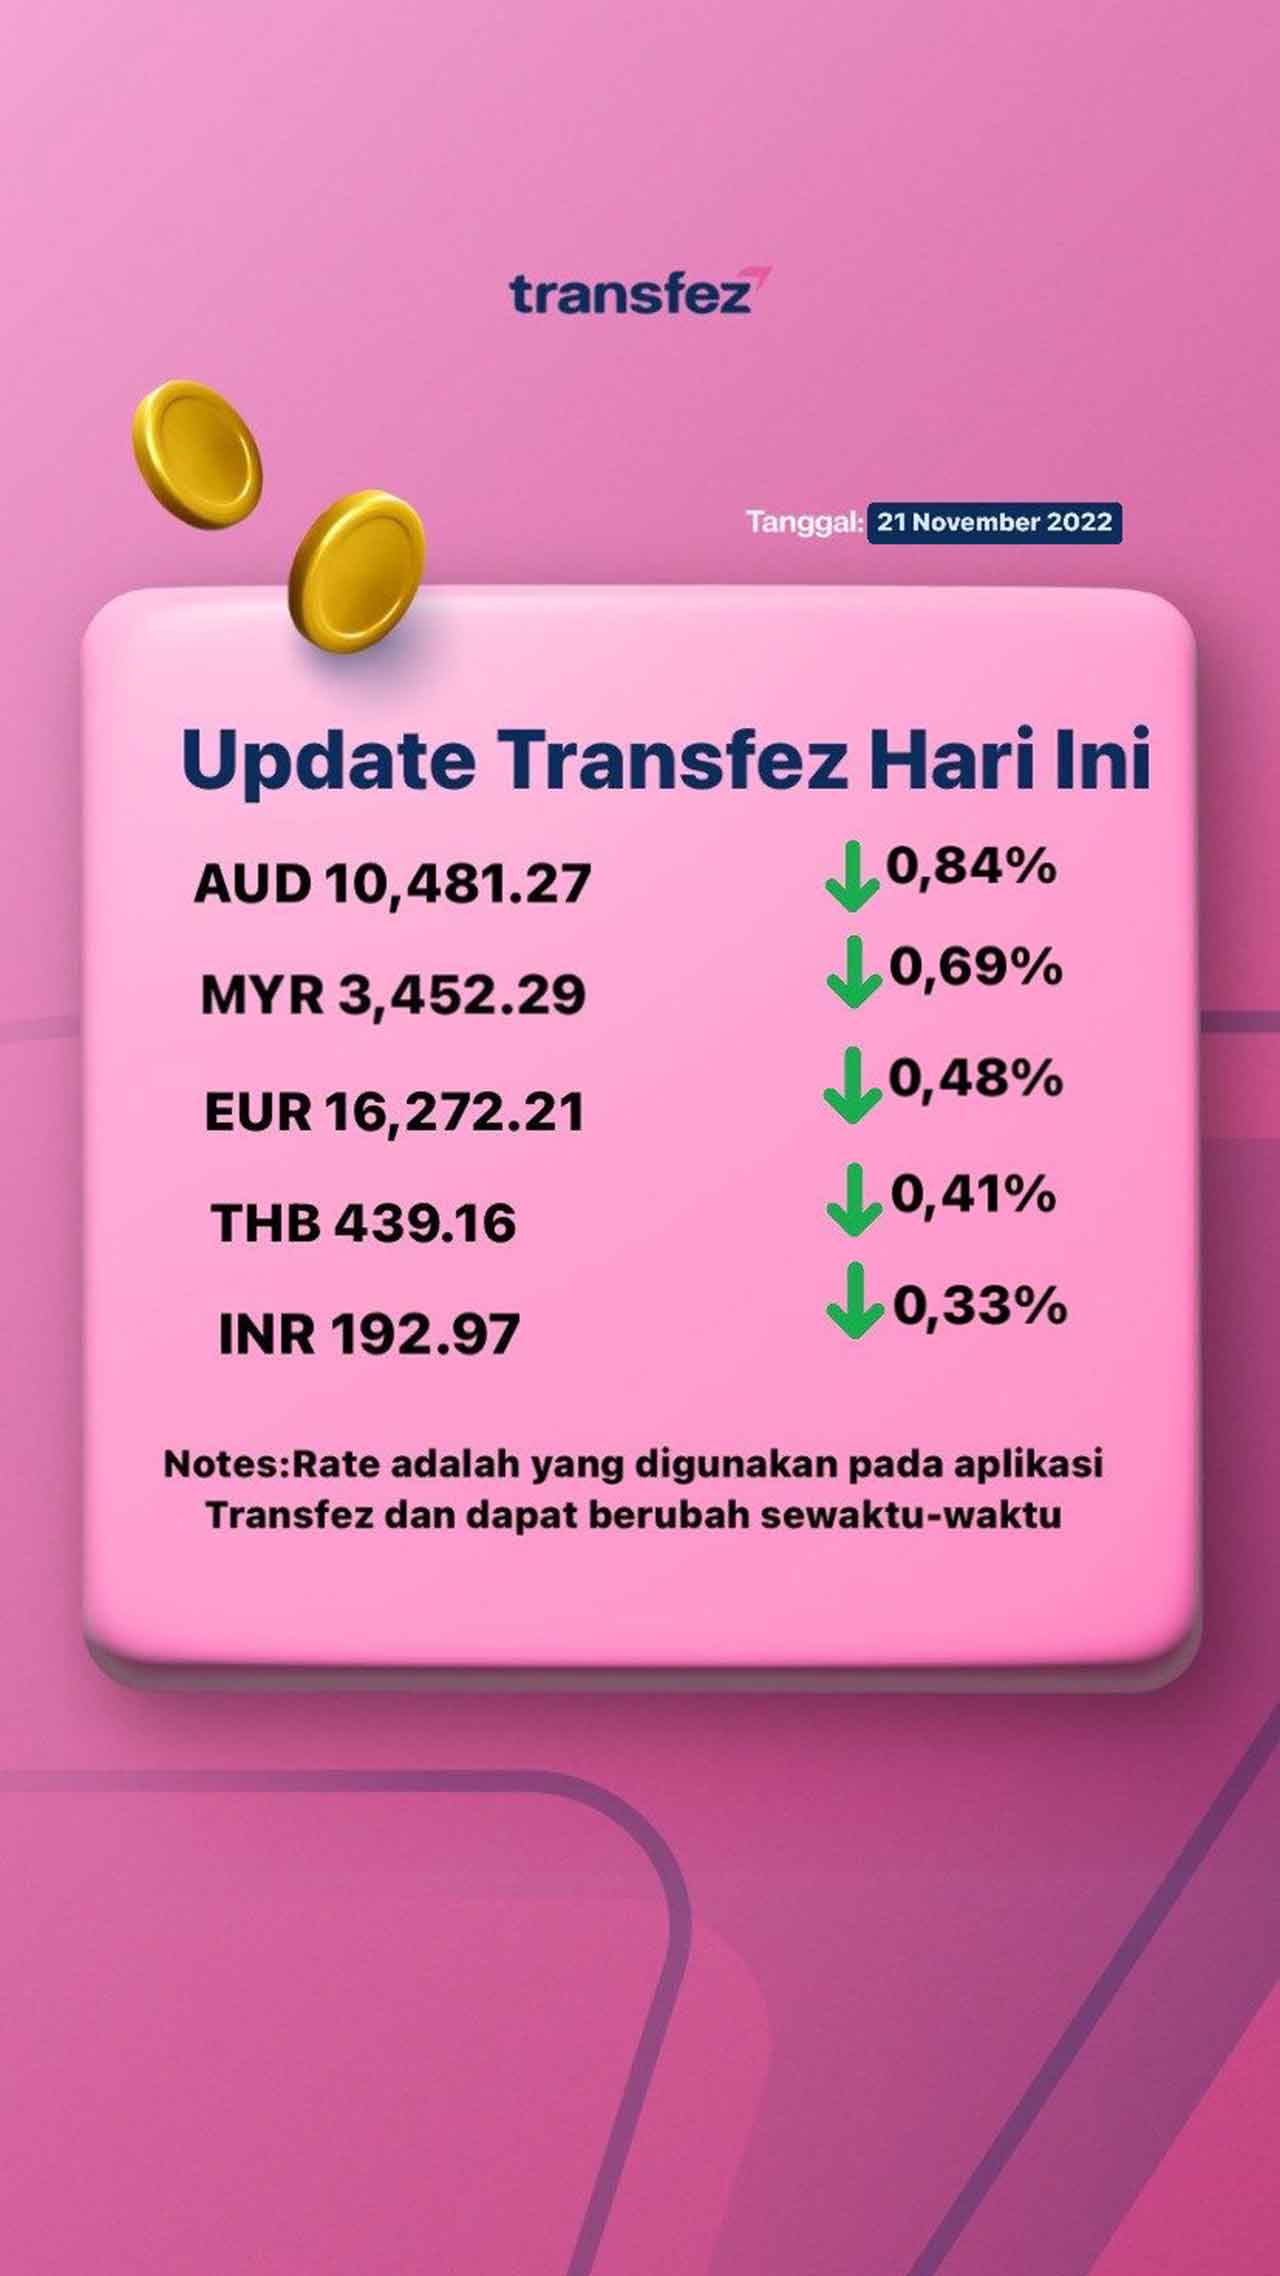 Update Rate Transfez Hari Ini 21 November 2022